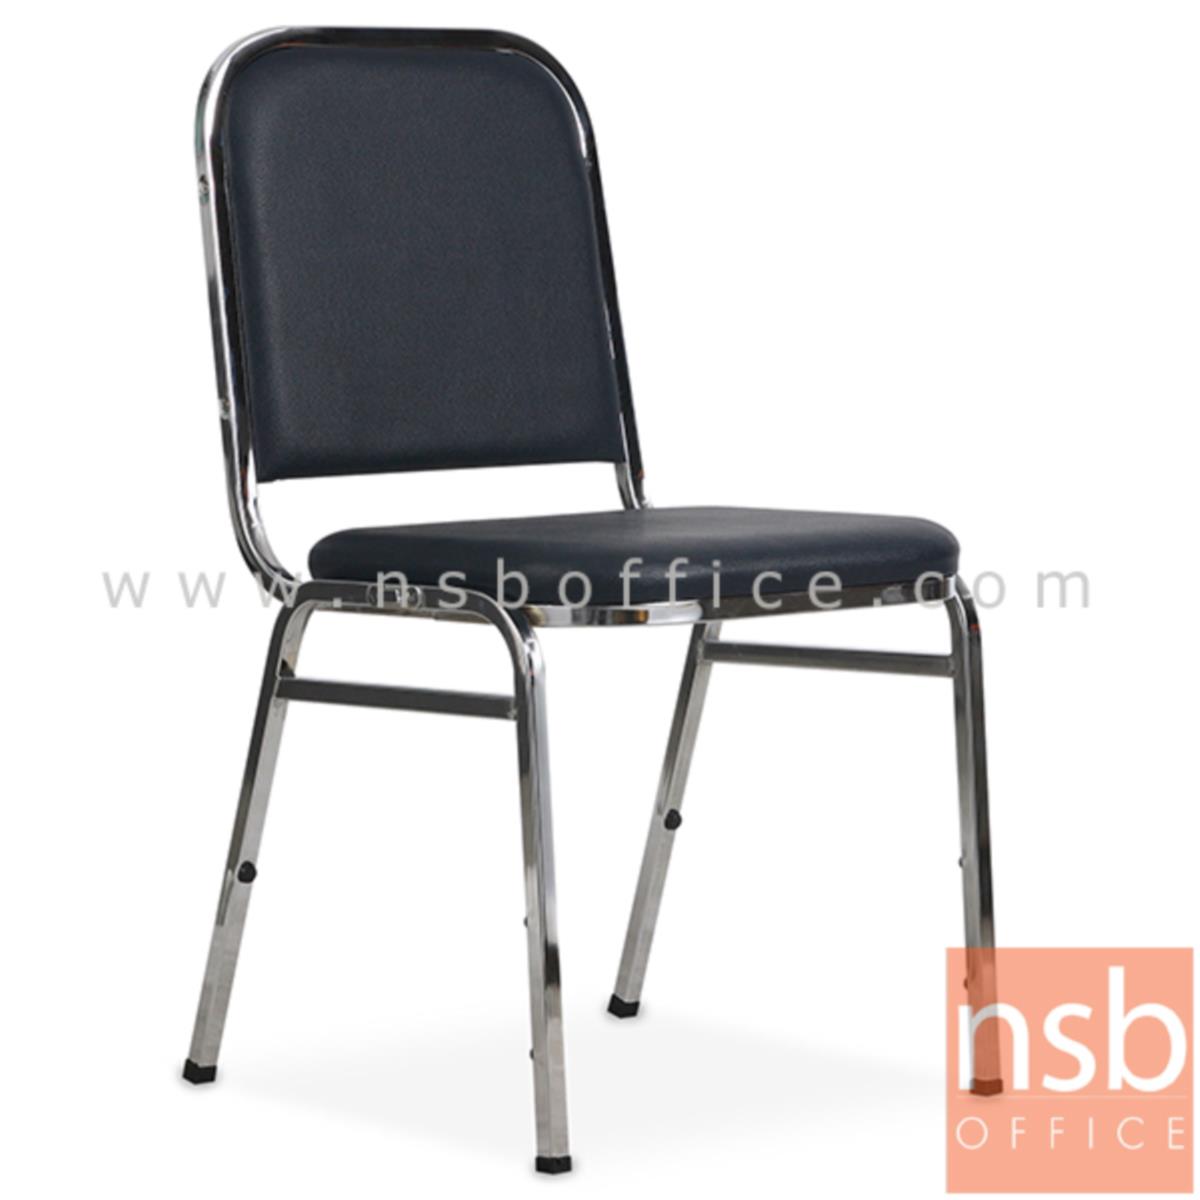 B05A080:เก้าอี้อเนกประสงค์จัดเลี้ยง รุ่น TY-801ACC  ขาเหล็กชุบโครเมี่ยม